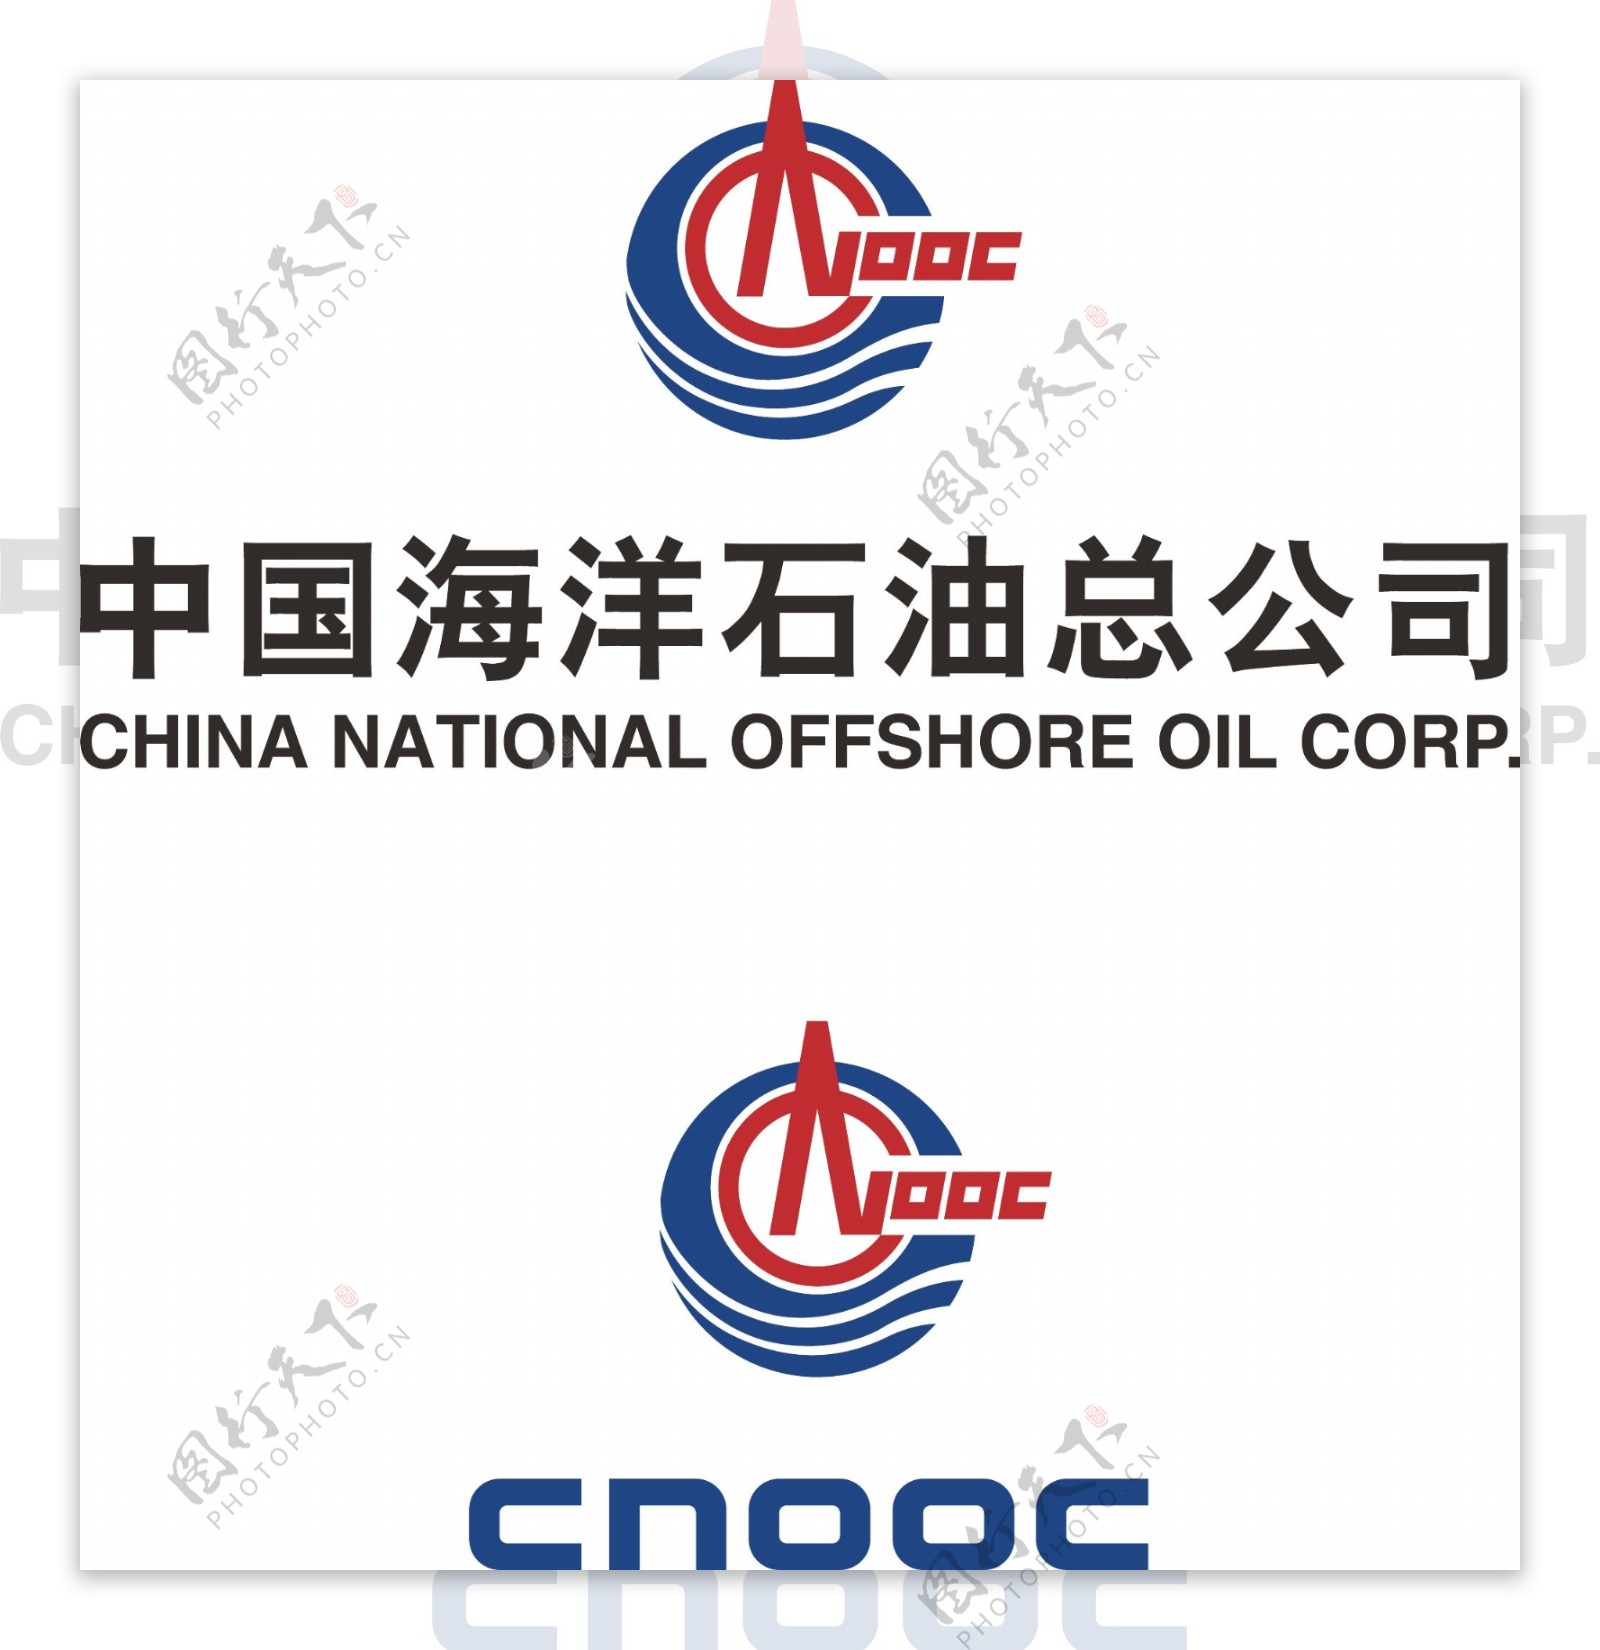 中国海洋石油总公司LOGO图片